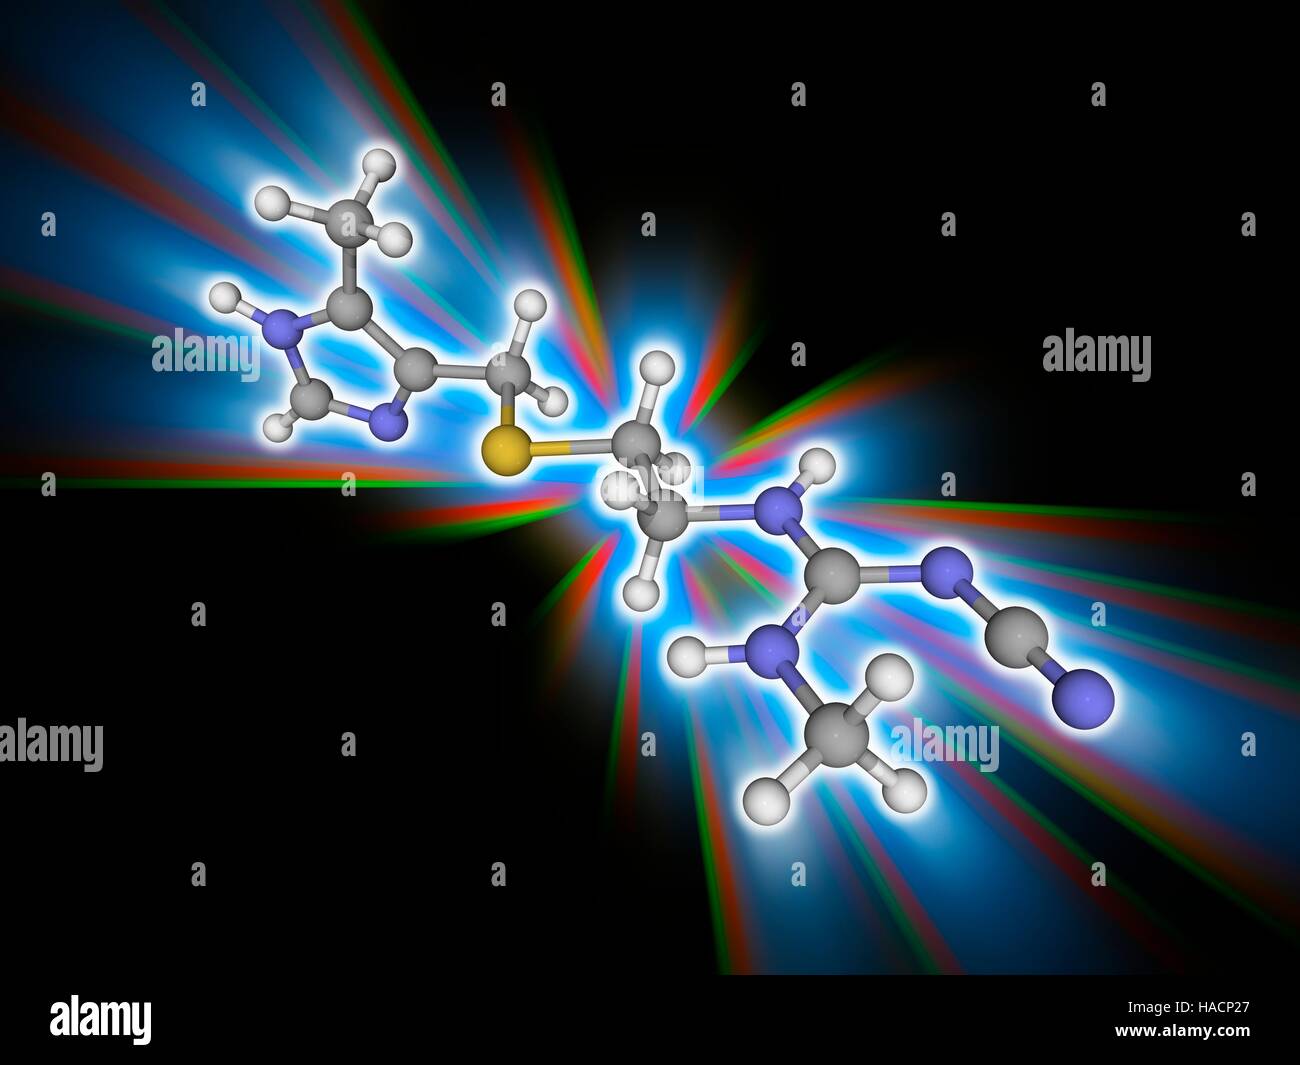 Cimetidin. Molekulares Modell des Medikaments Cimetidin (C10. H16. N6. (S), zur Behandlung von Sodbrennen und peptischen Ulzera. Es ist ein Histamin-H2-Rezeptor-Antagonisten hemmen die Produktion von Säure im Magen. Atome als Kugeln dargestellt werden und sind farblich gekennzeichnet: Kohlenstoff (grau), Wasserstoff (weiß), Stickstoff (blau) und Schwefel (gelb). Abbildung. Stockfoto